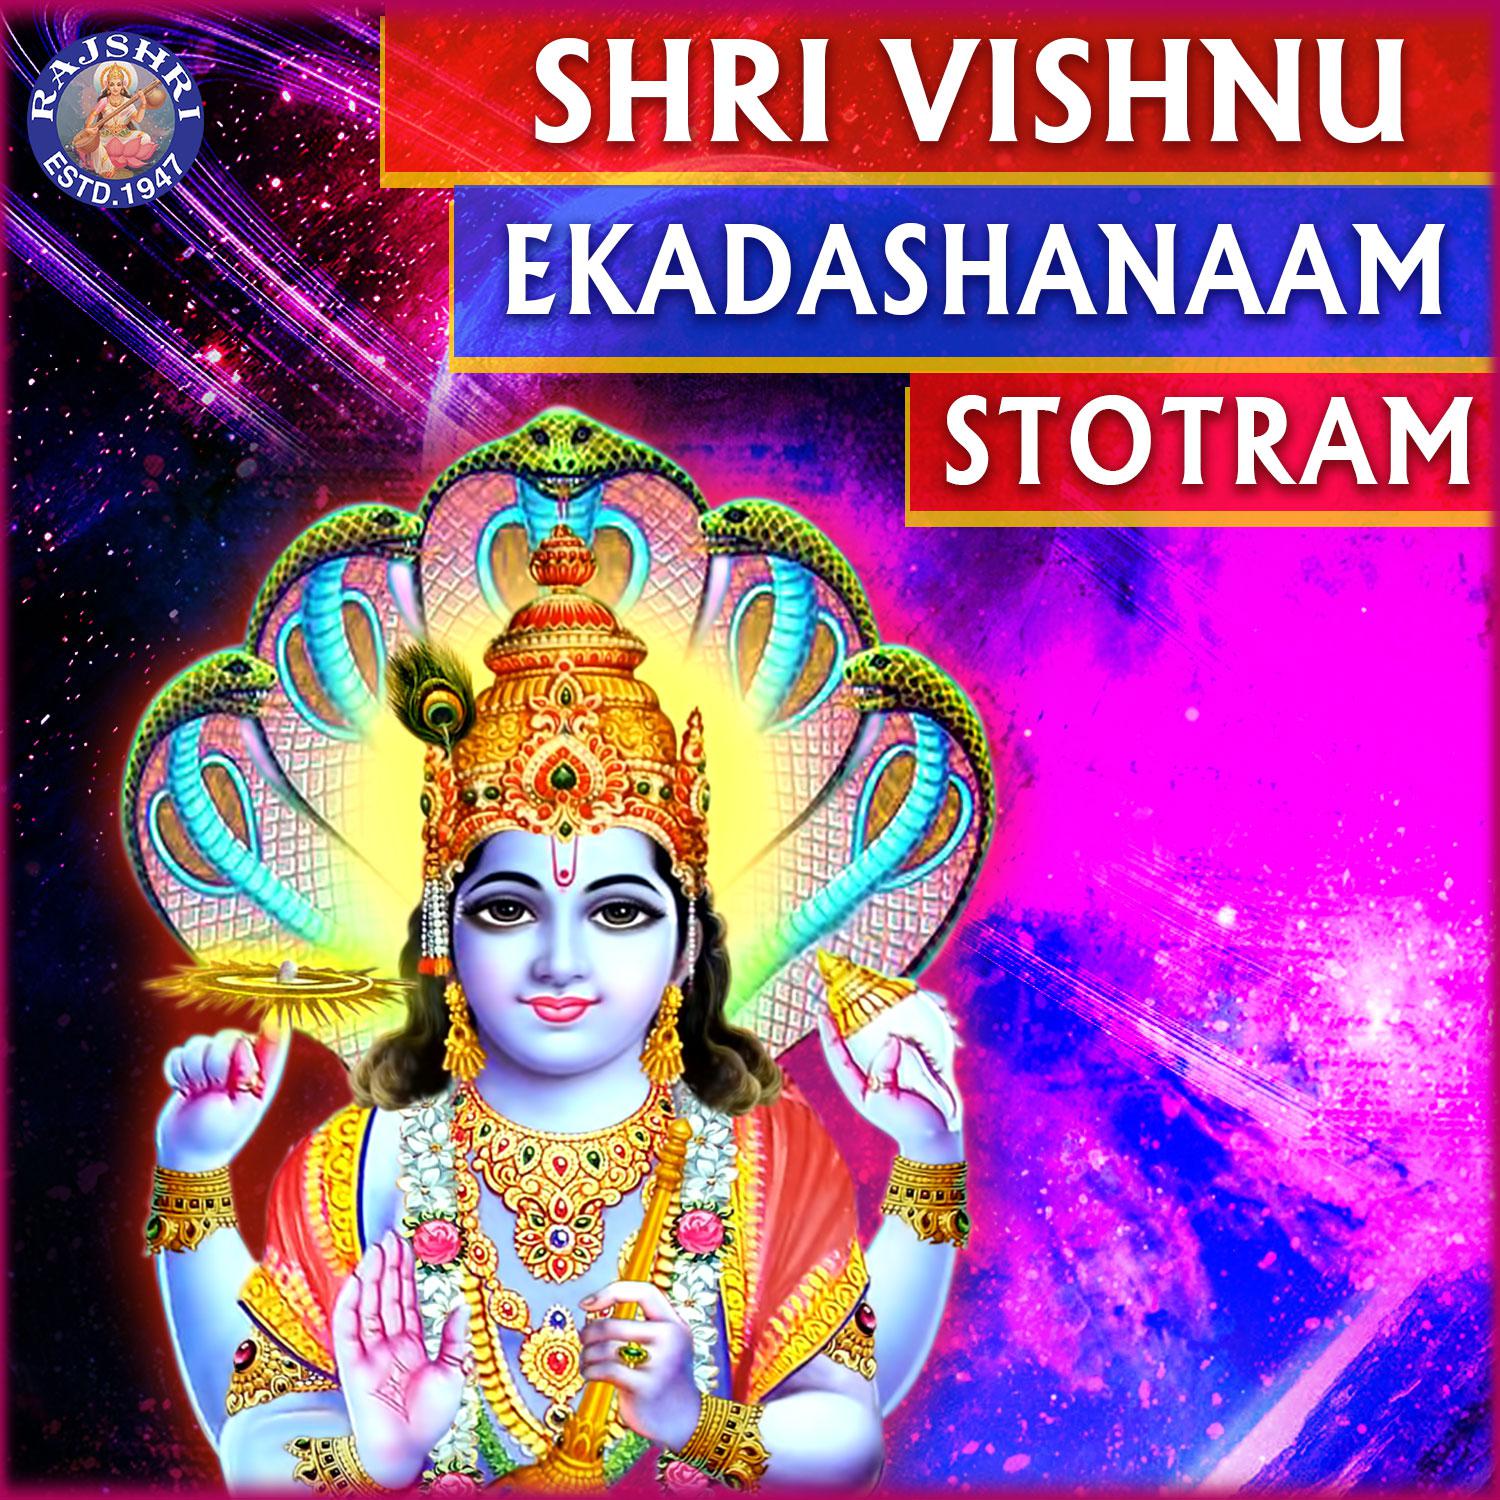 Shri Vishnu Ekadashnaam Stotra